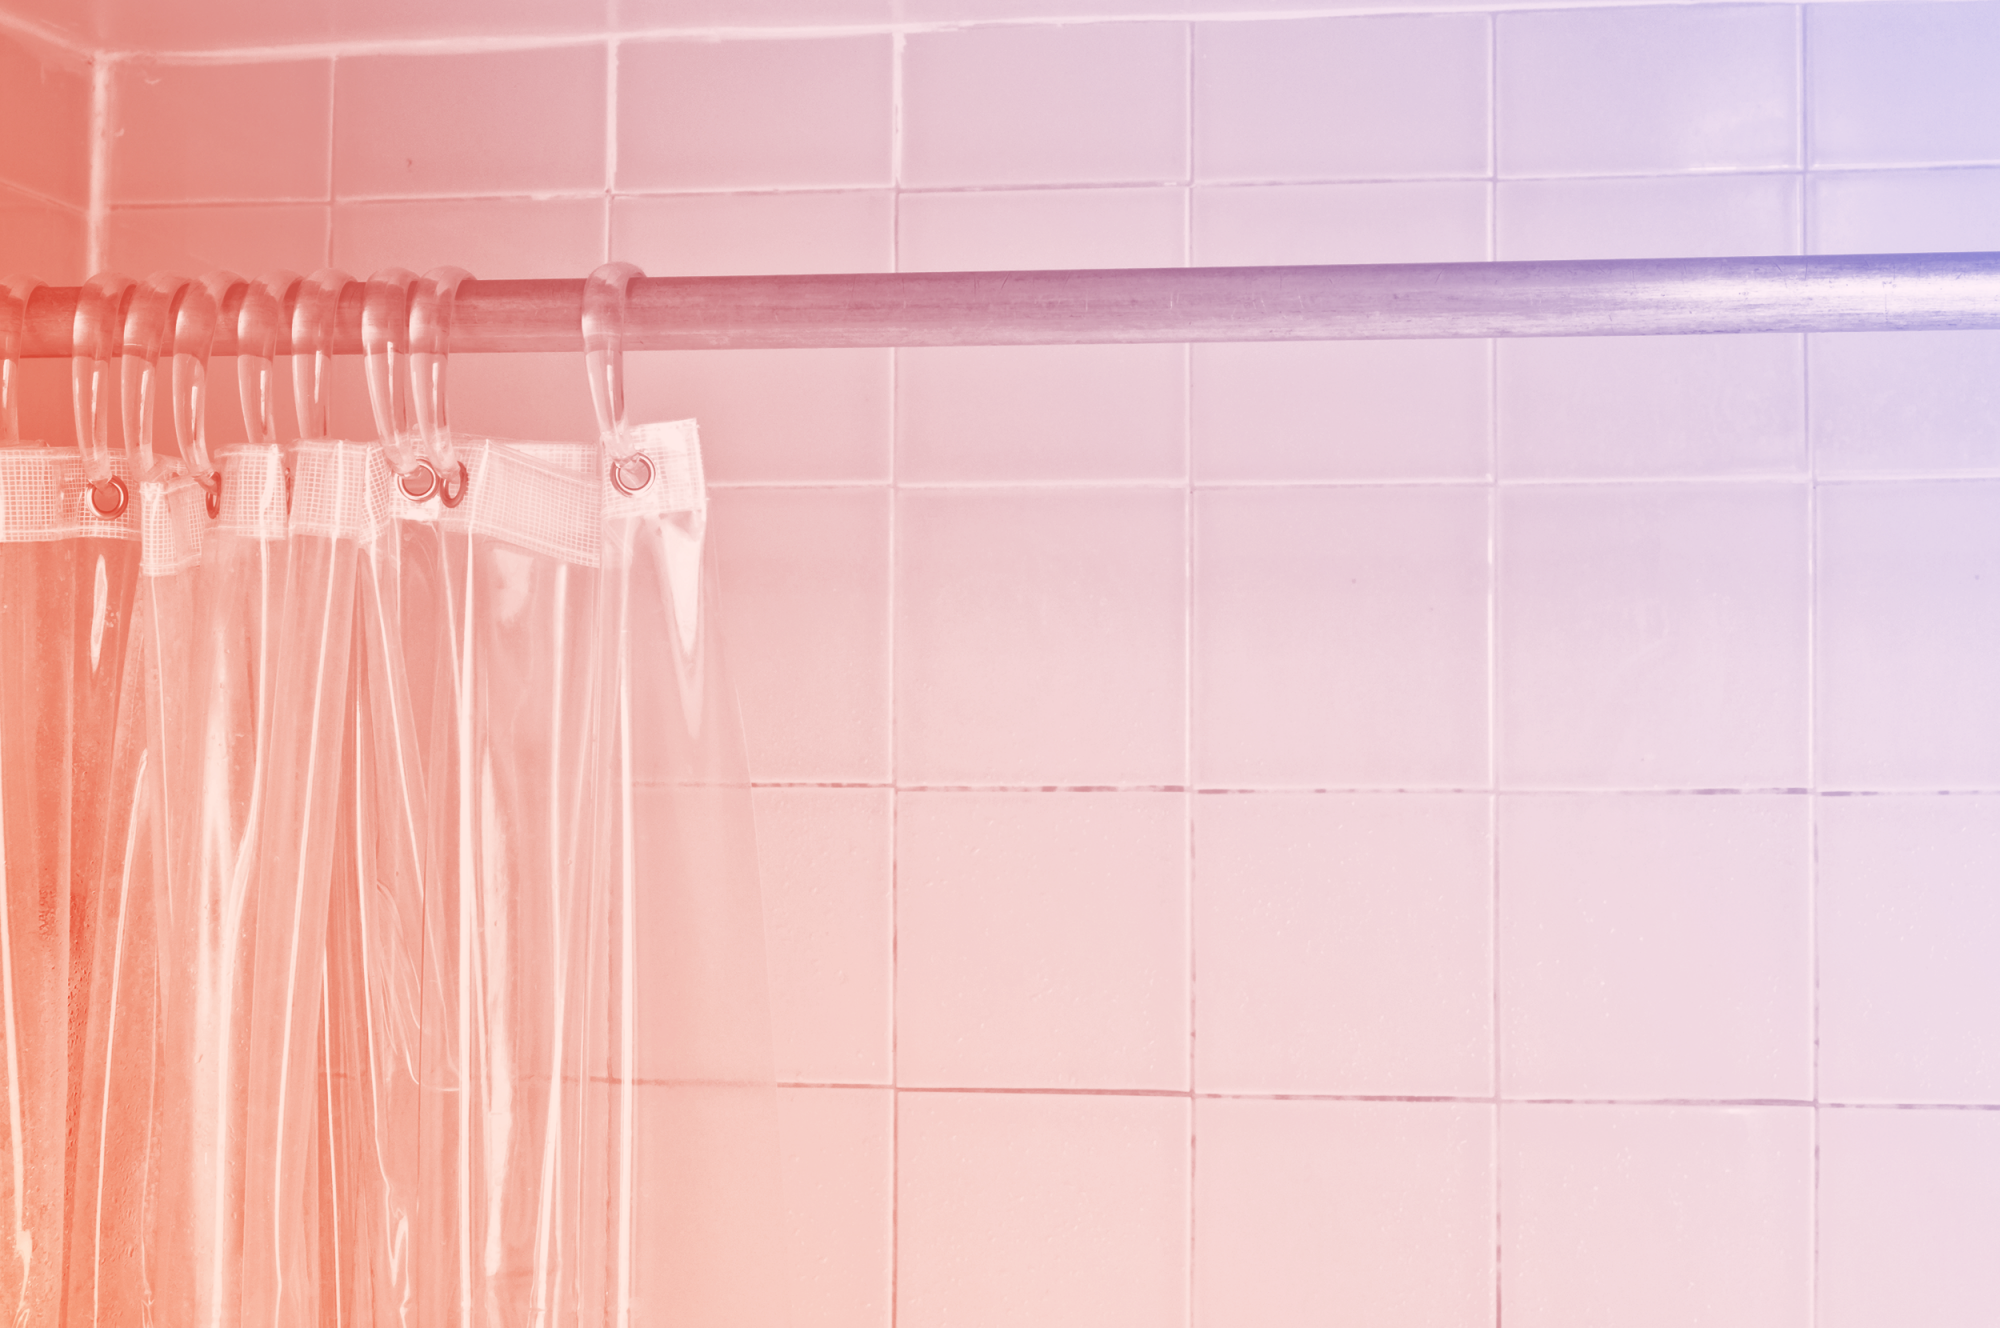 Rèm che phòng tắm là một lựa chọn thông minh để giữ cho không gian này sạch sẽ và gọn gàng. Với một loạt các mẫu rèm khác nhau, bạn có thể tạo ra một phòng tắm đẹp và tiện nghi, phù hợp với phong cách của bạn. Bấm vào ảnh để khám phá thêm về những mẫu rèm che phòng tắm độc đáo và sáng tạo.